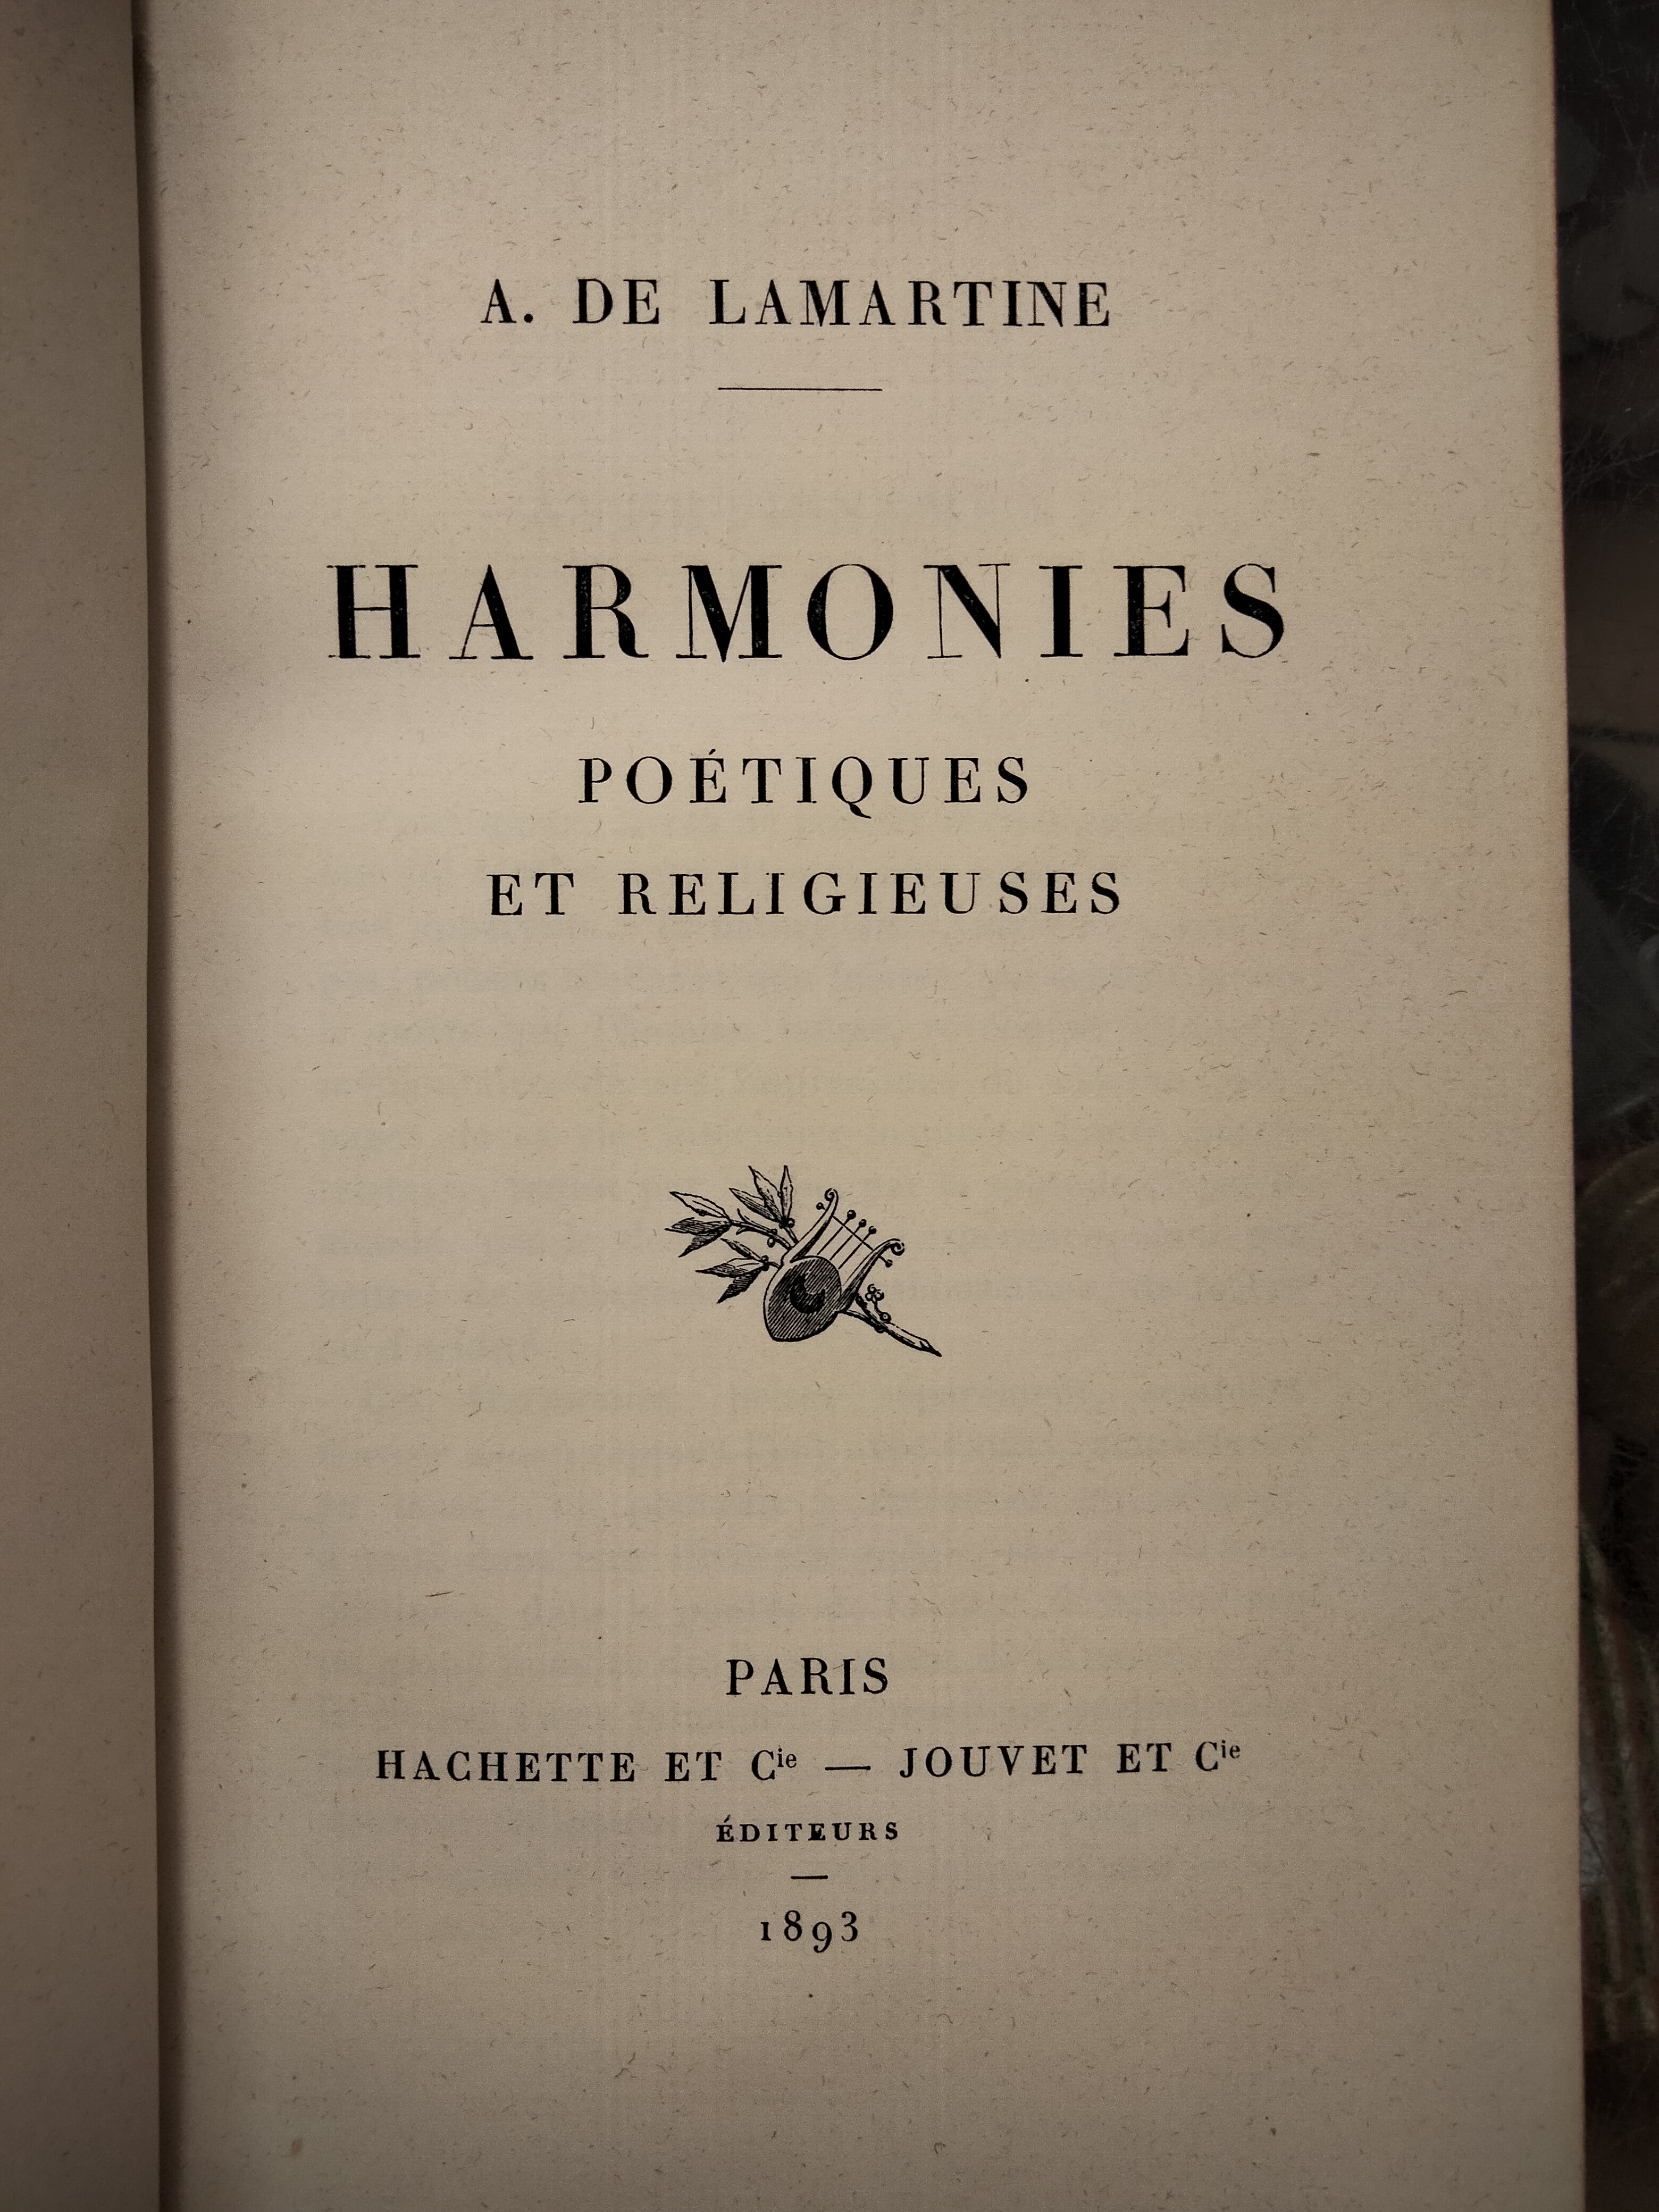 Harmonies poetiques et religieuses.